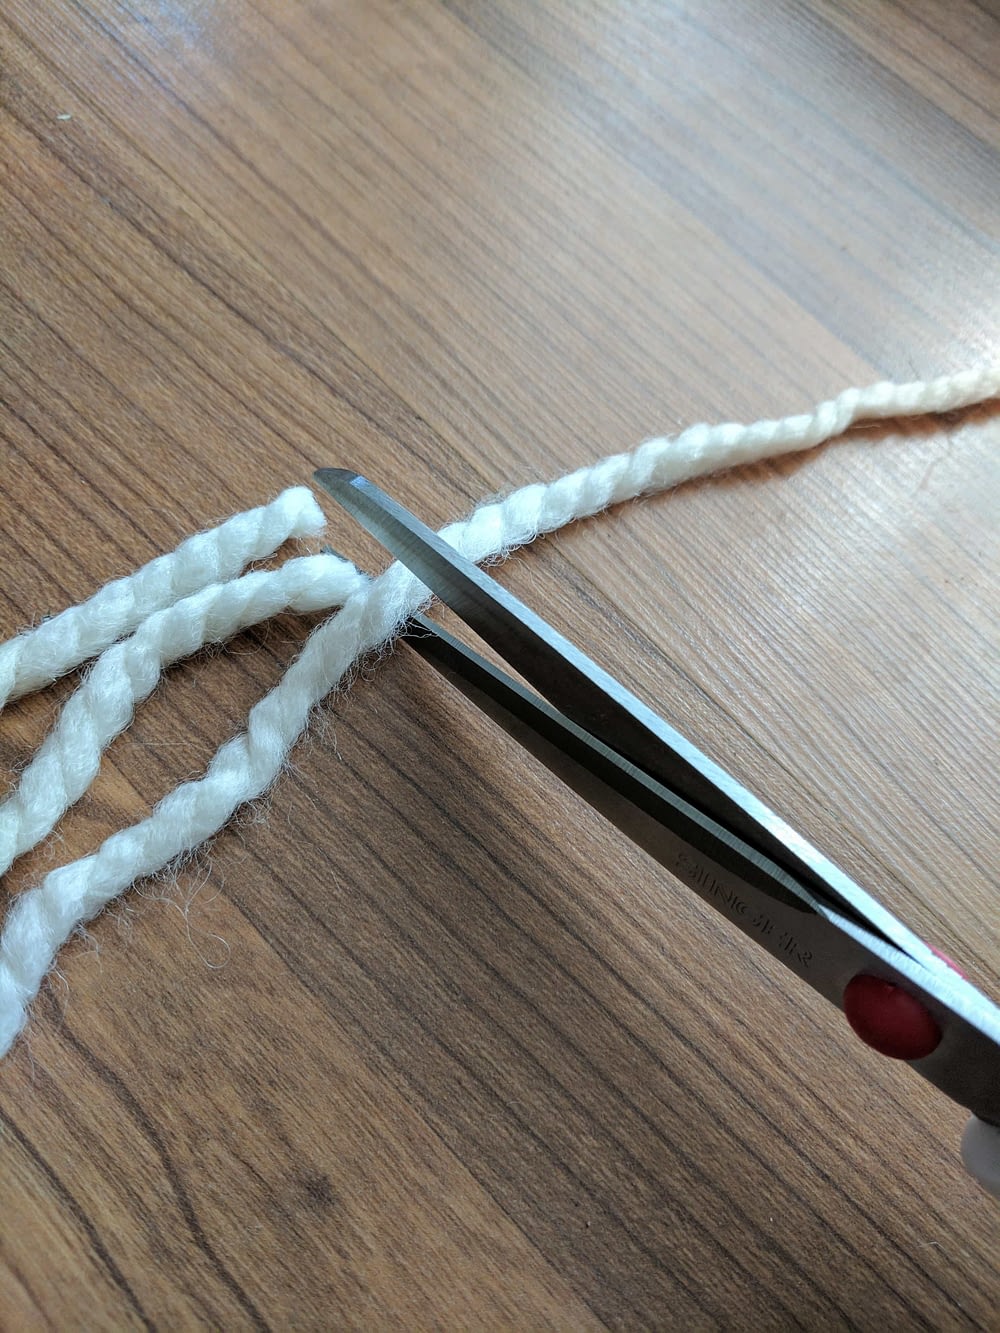 cutting yarn with scissors